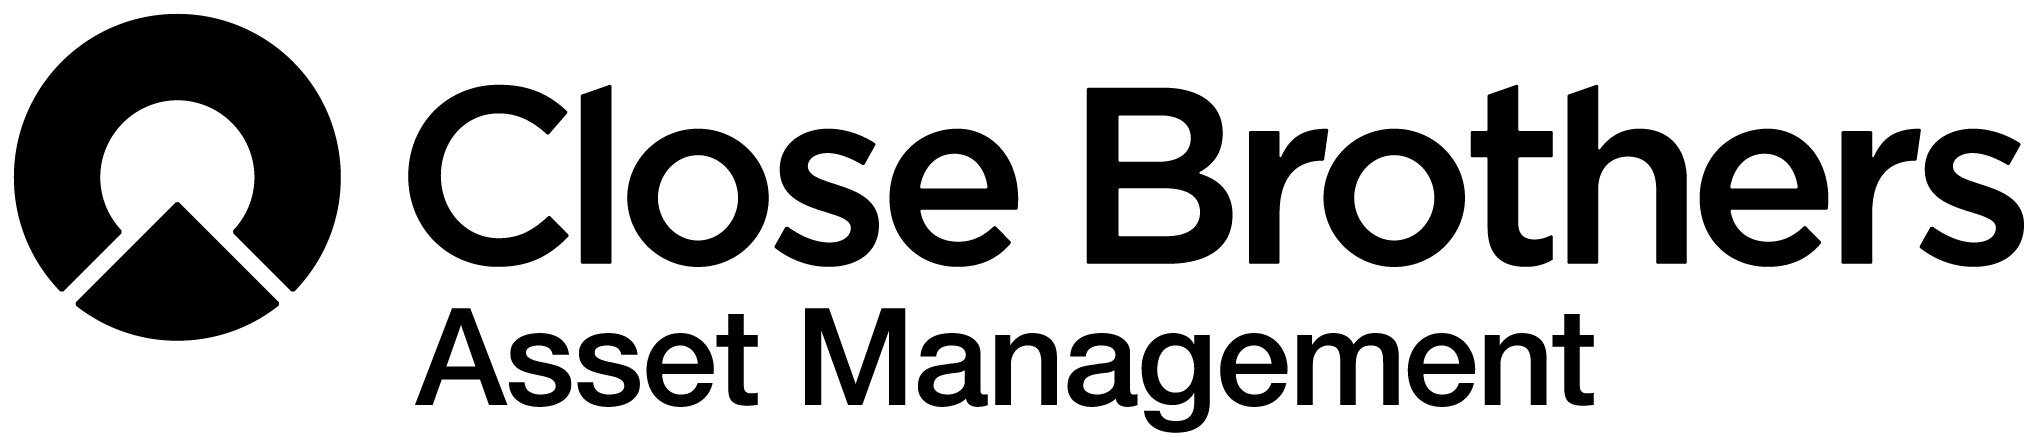 CB_Asset Management_BD CMYK A1 logo.jpg